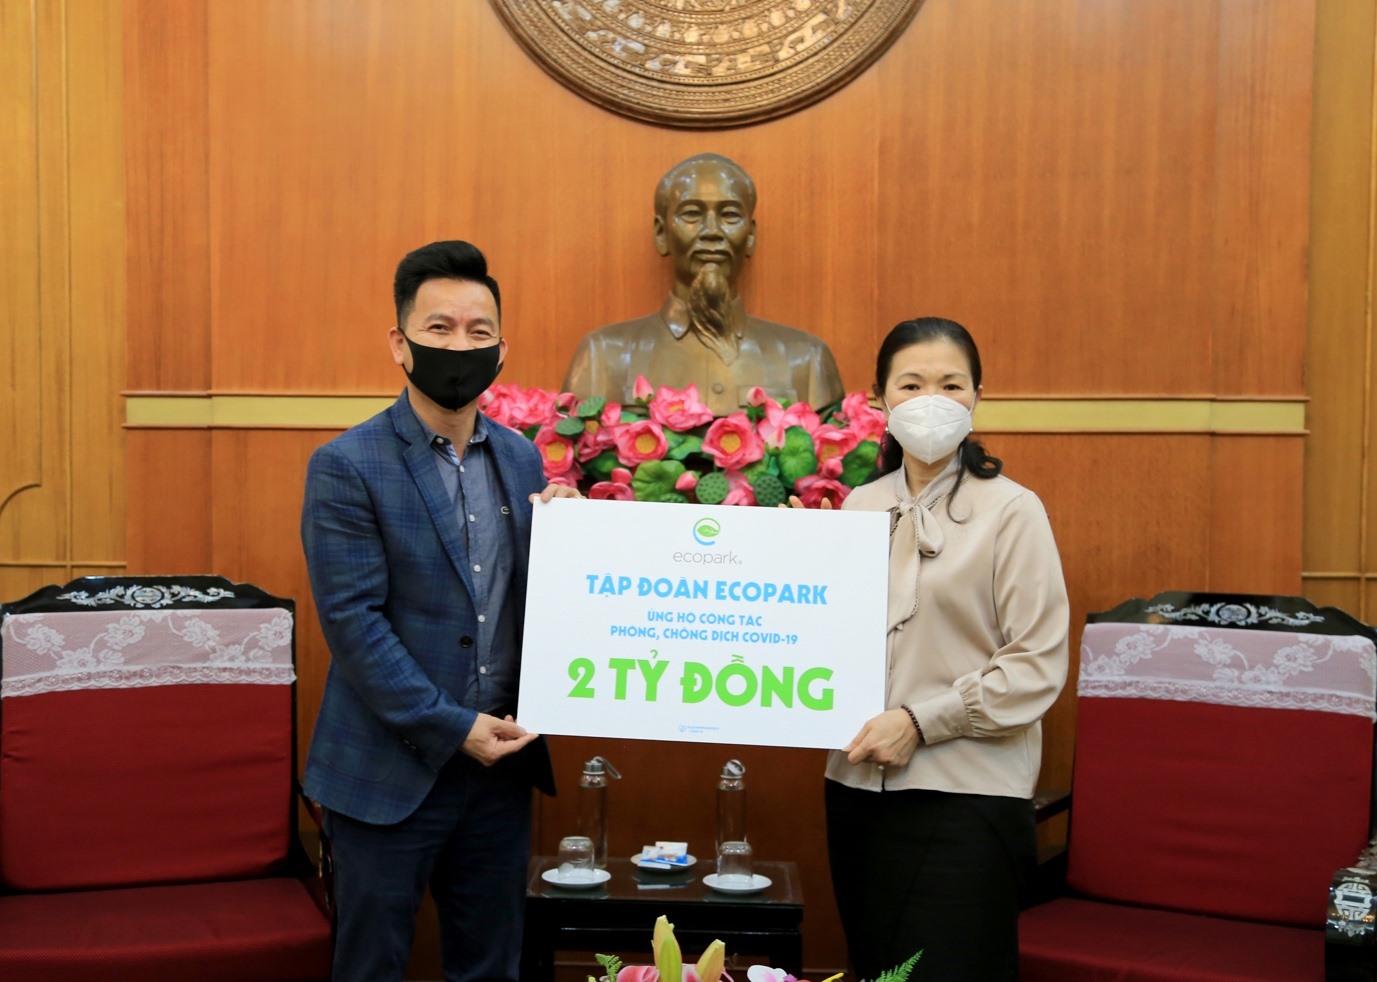 Ông Trần Quốc Việt - Tổng Giám đốc Tập đoàn Ecopark trao ủng hộ 2 tỷ đồng cho công tác phòng chống dịch Covid-19 thông qua Uỷ ban Trung ương Mặt trận Tổ quốc Việt Nam.